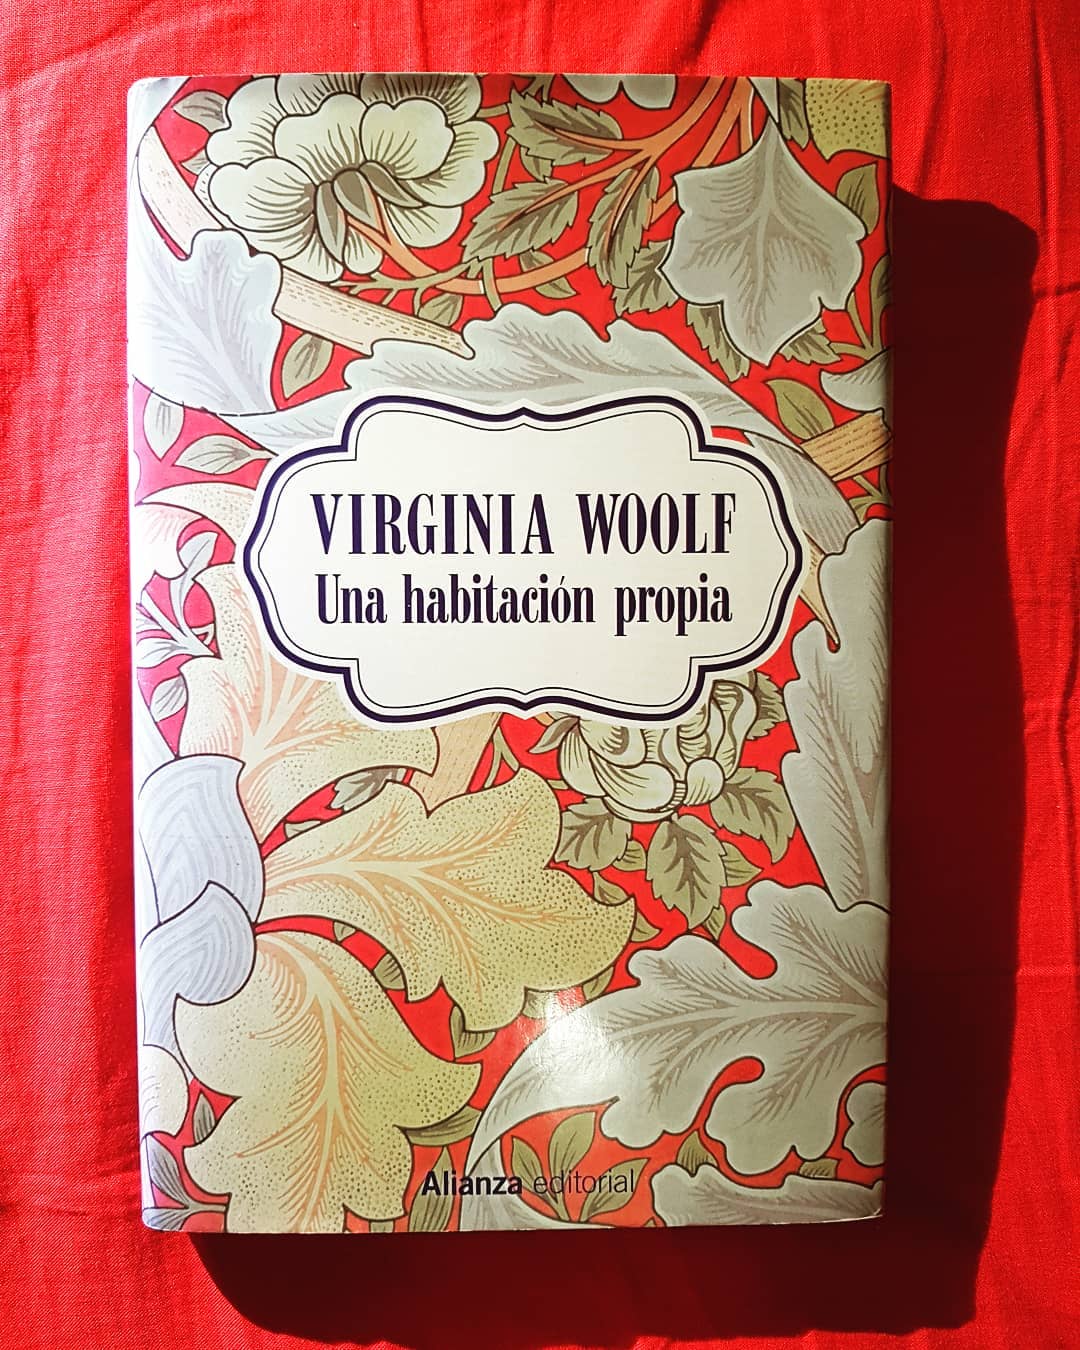 Virginia Woolf, <i>Una habitación propia</i>